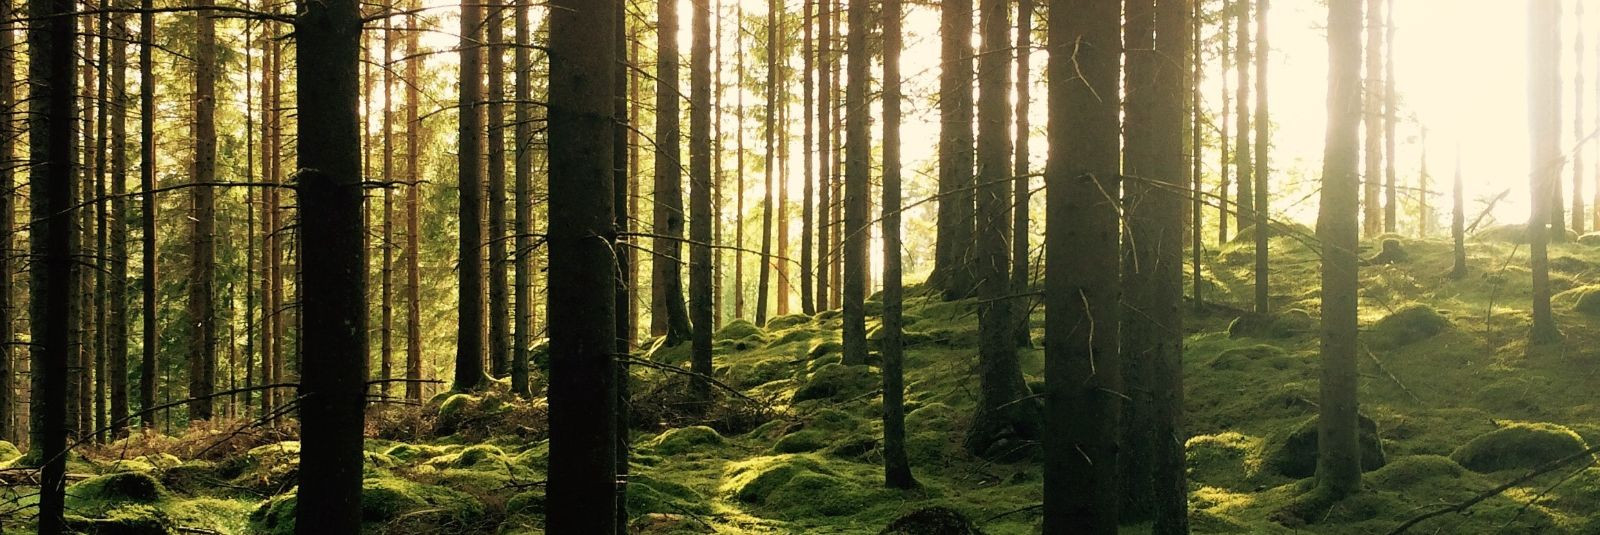 Vivashop OÜ on pühendunud ettevõte, mis on aastate jooksul kujundanud Eesti metsamajanduse maastikku, pakkudes laia valikut teenuseid selles sektoris. Meie miss